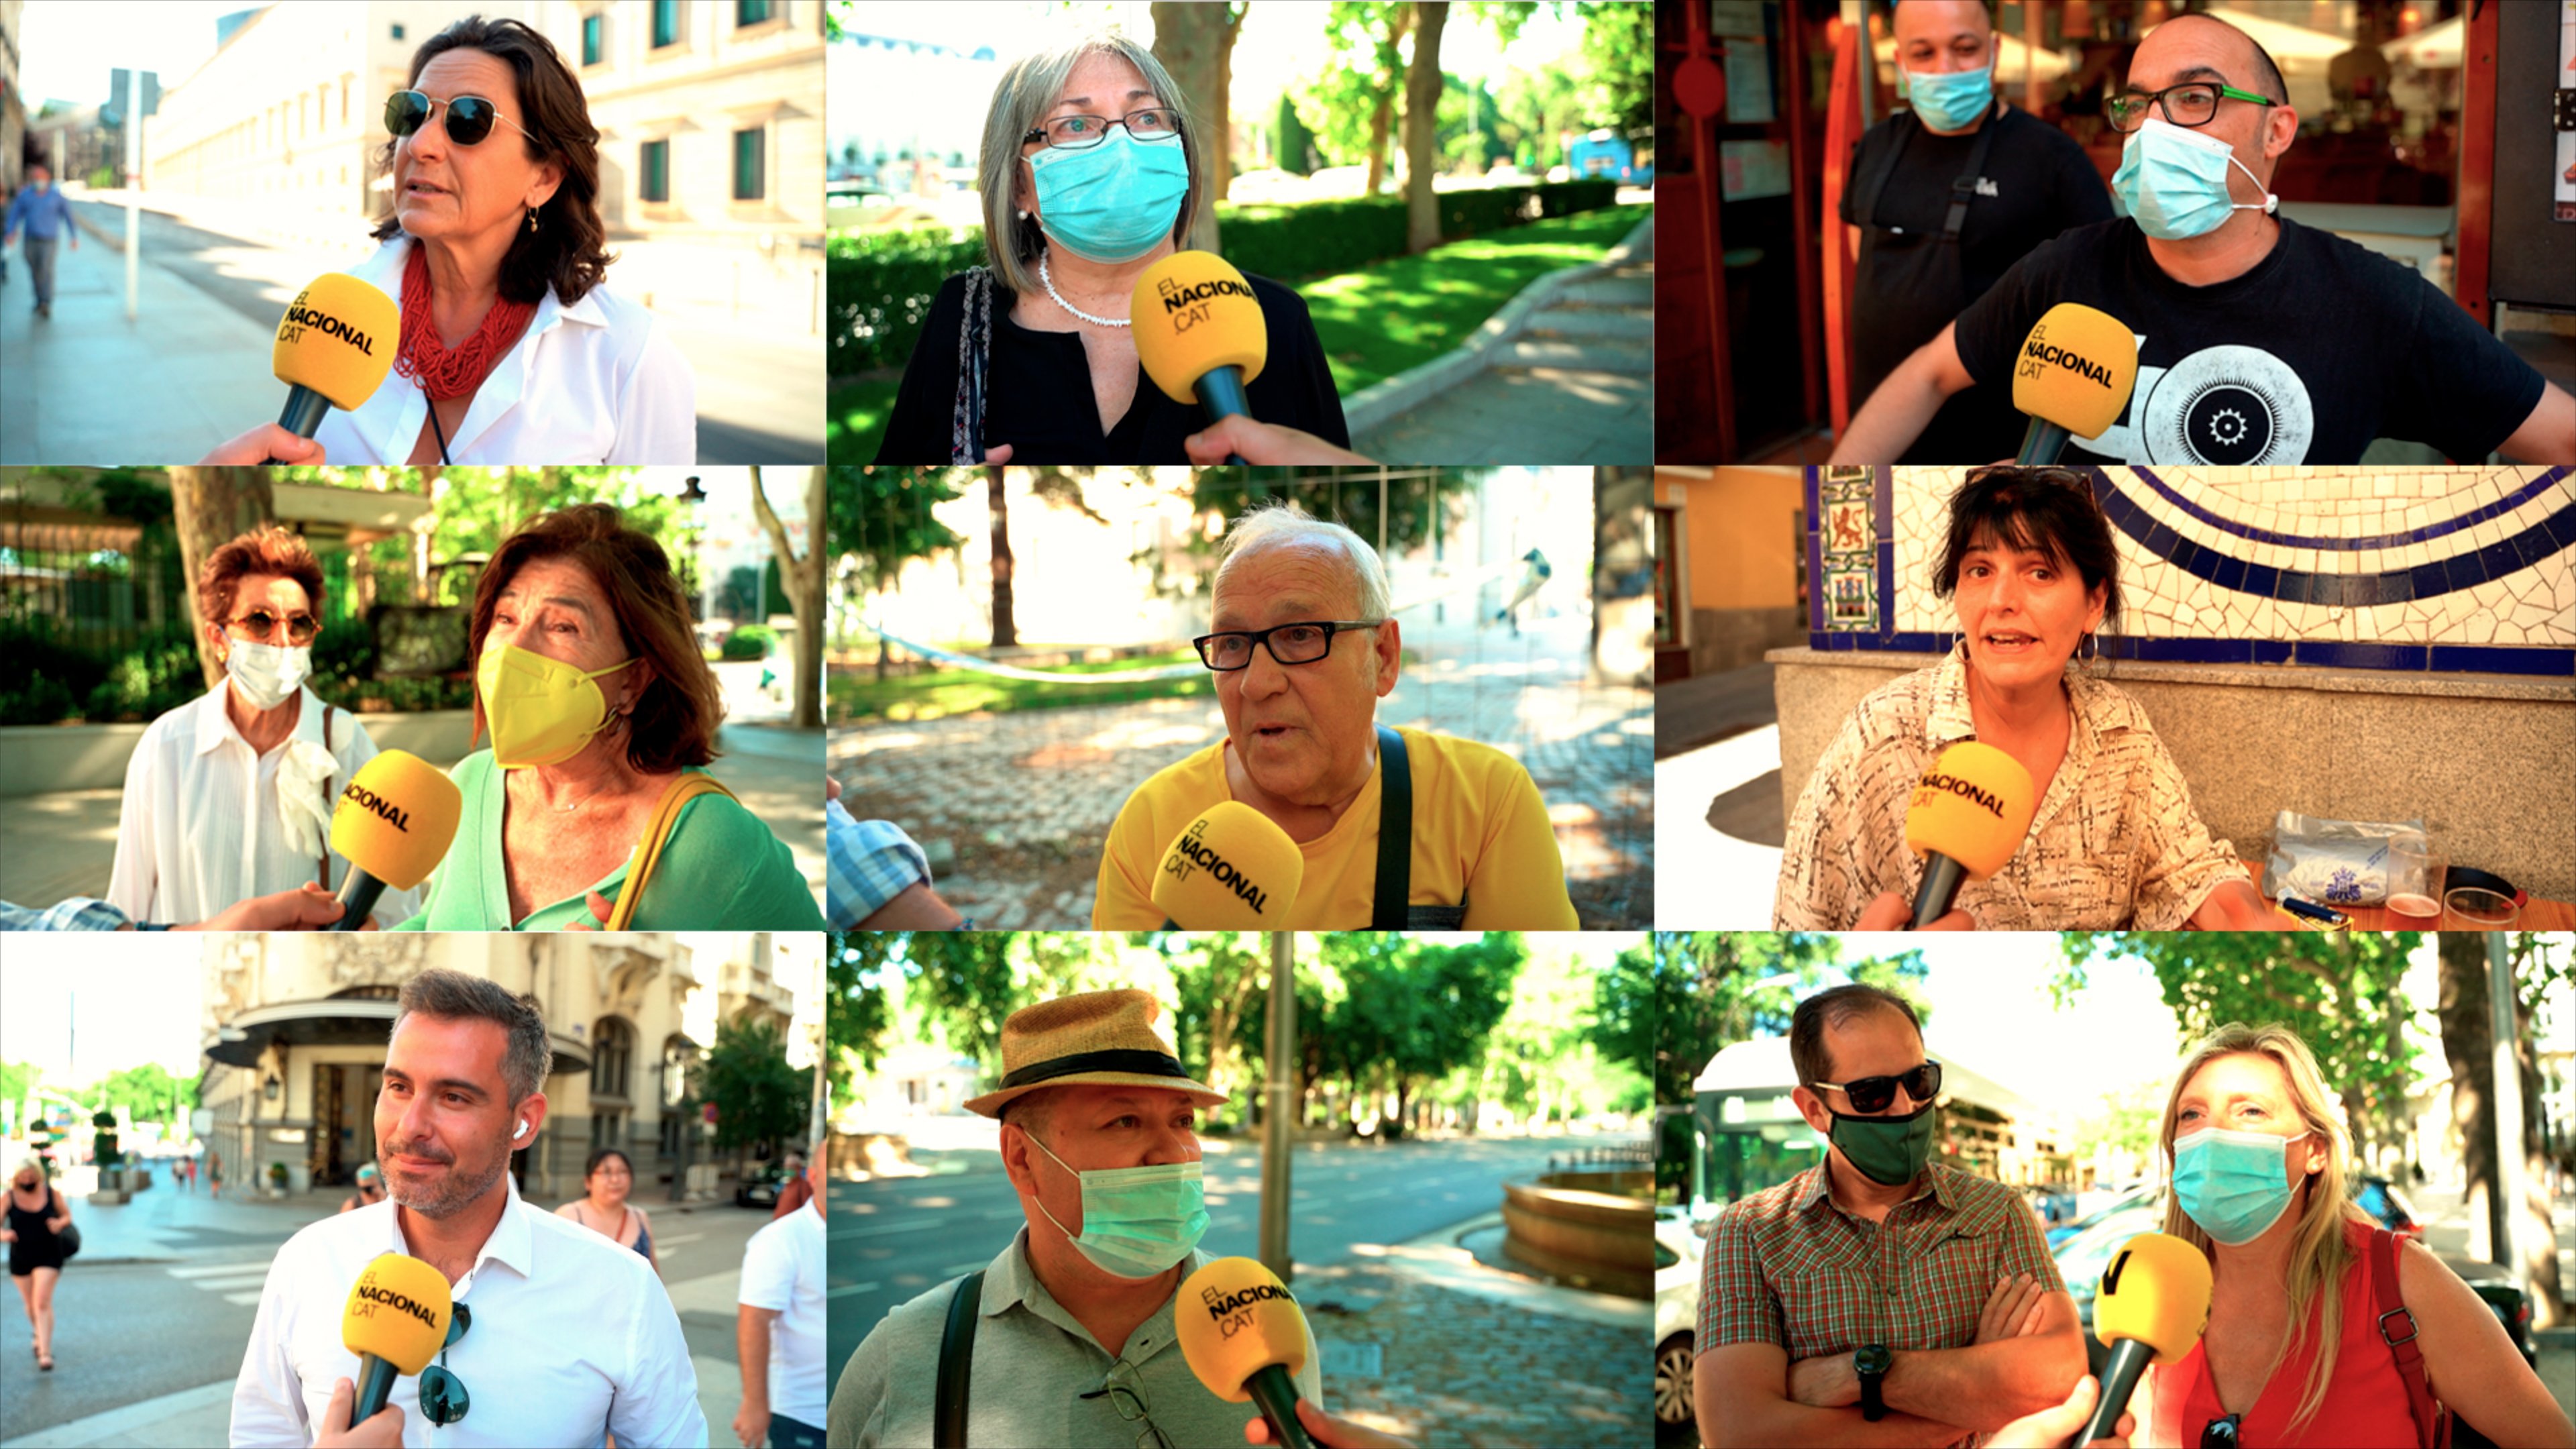 VÍDEO Entre la concordia y la revancha: el diálogo en las calles de Madrid